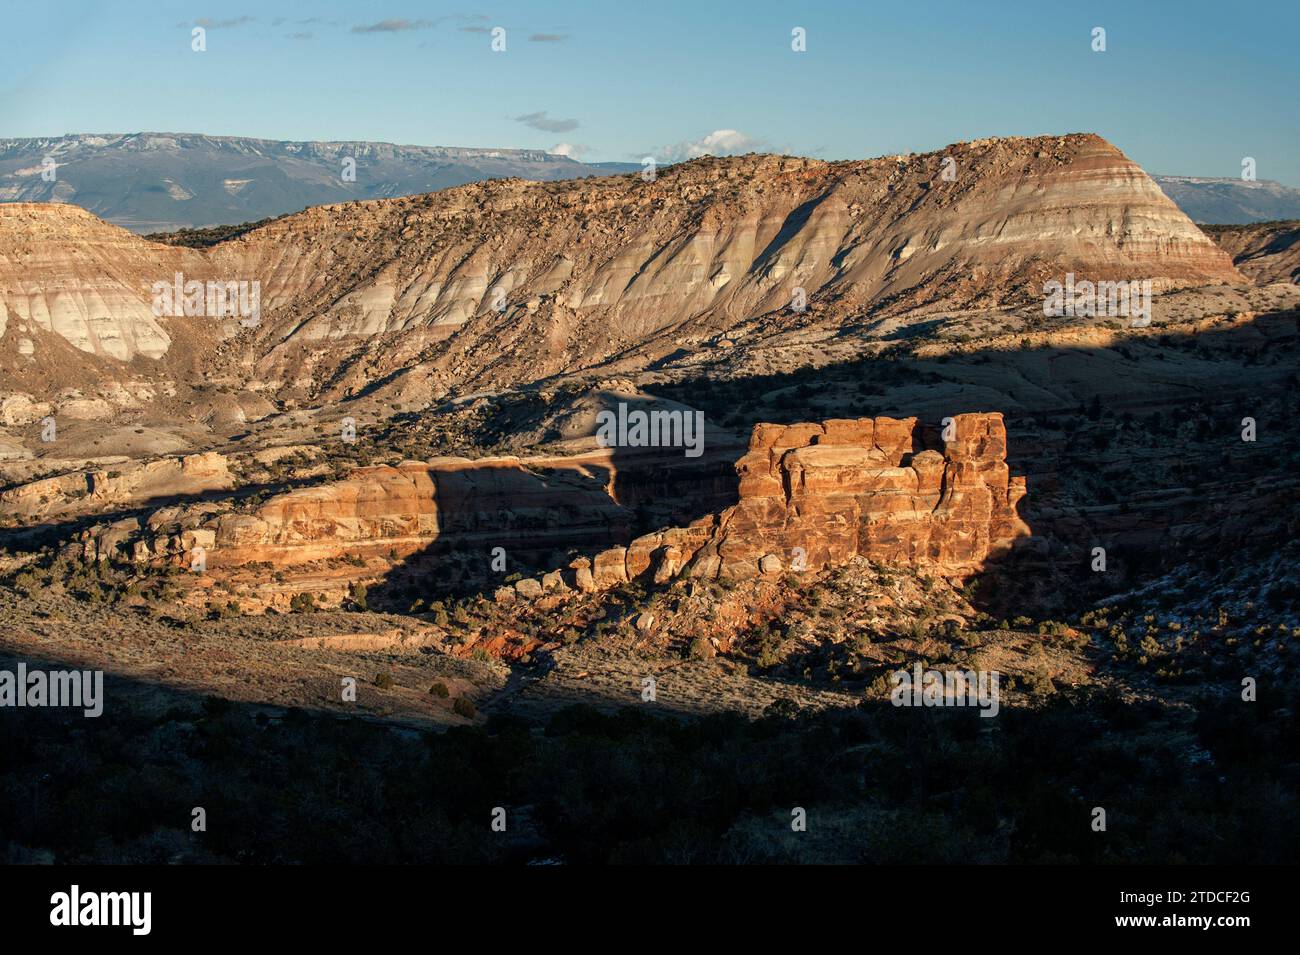 Los últimos rayos de sol del día iluminan la Cocina del Diablo del Monumento Nacional de Colorado, un remanente de arenisca de formación Wingate que descansa sobre el ciervo Foto de stock